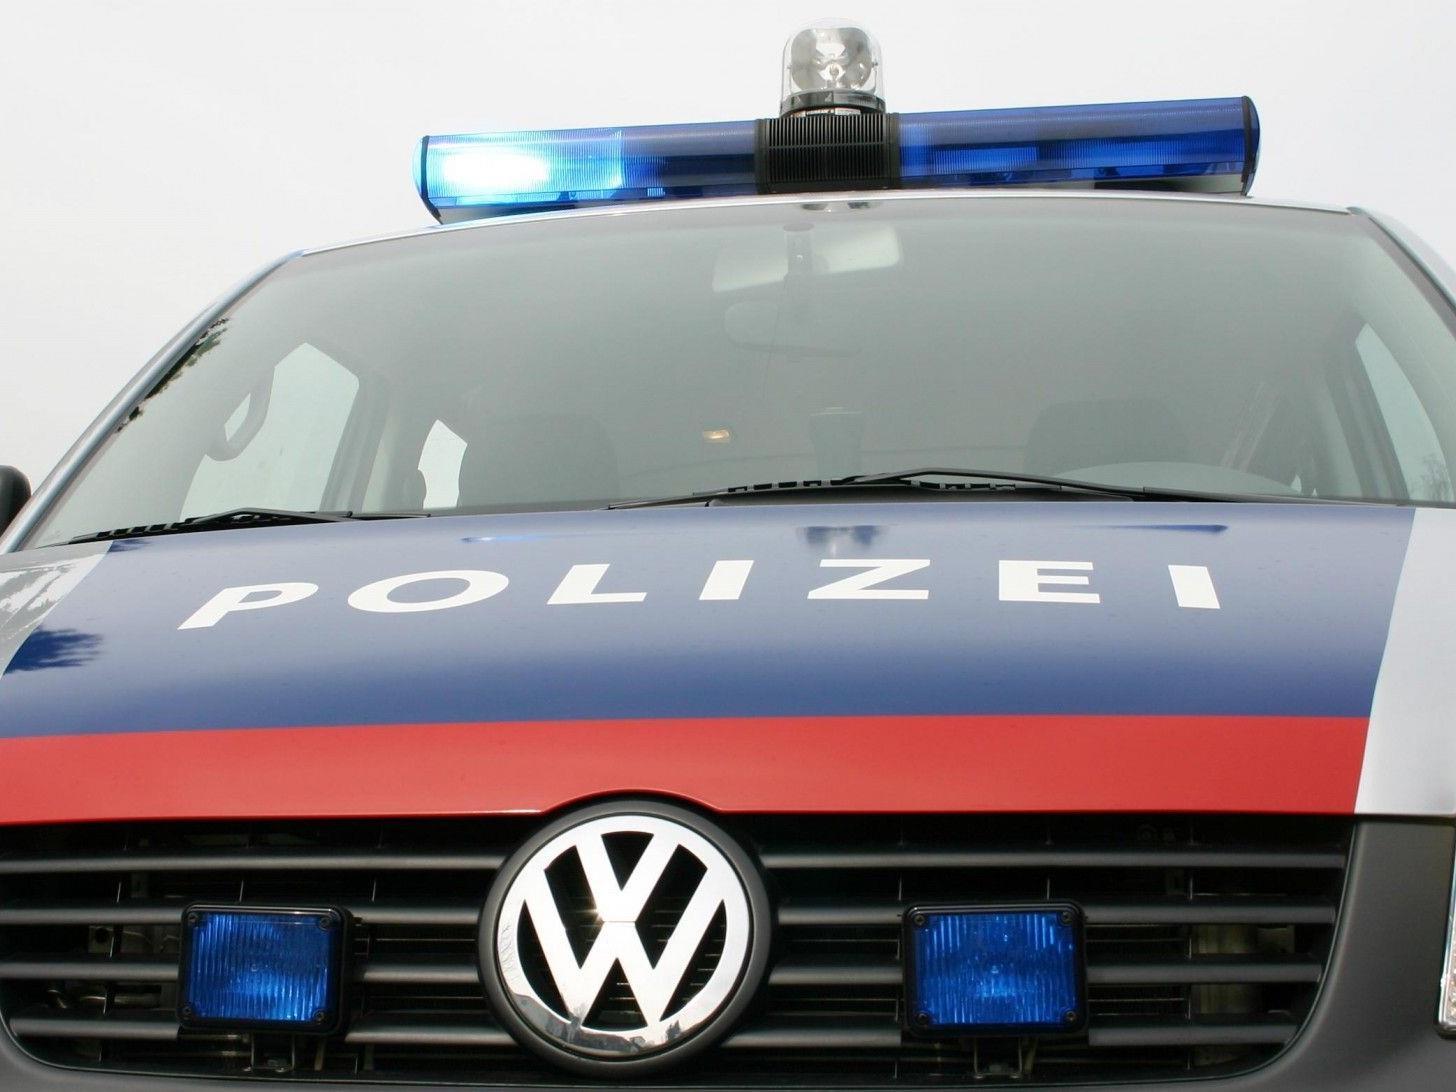 Zeugen werden gebeten, sich mit der Polizei Bregenz in Verbindung zu setzen.